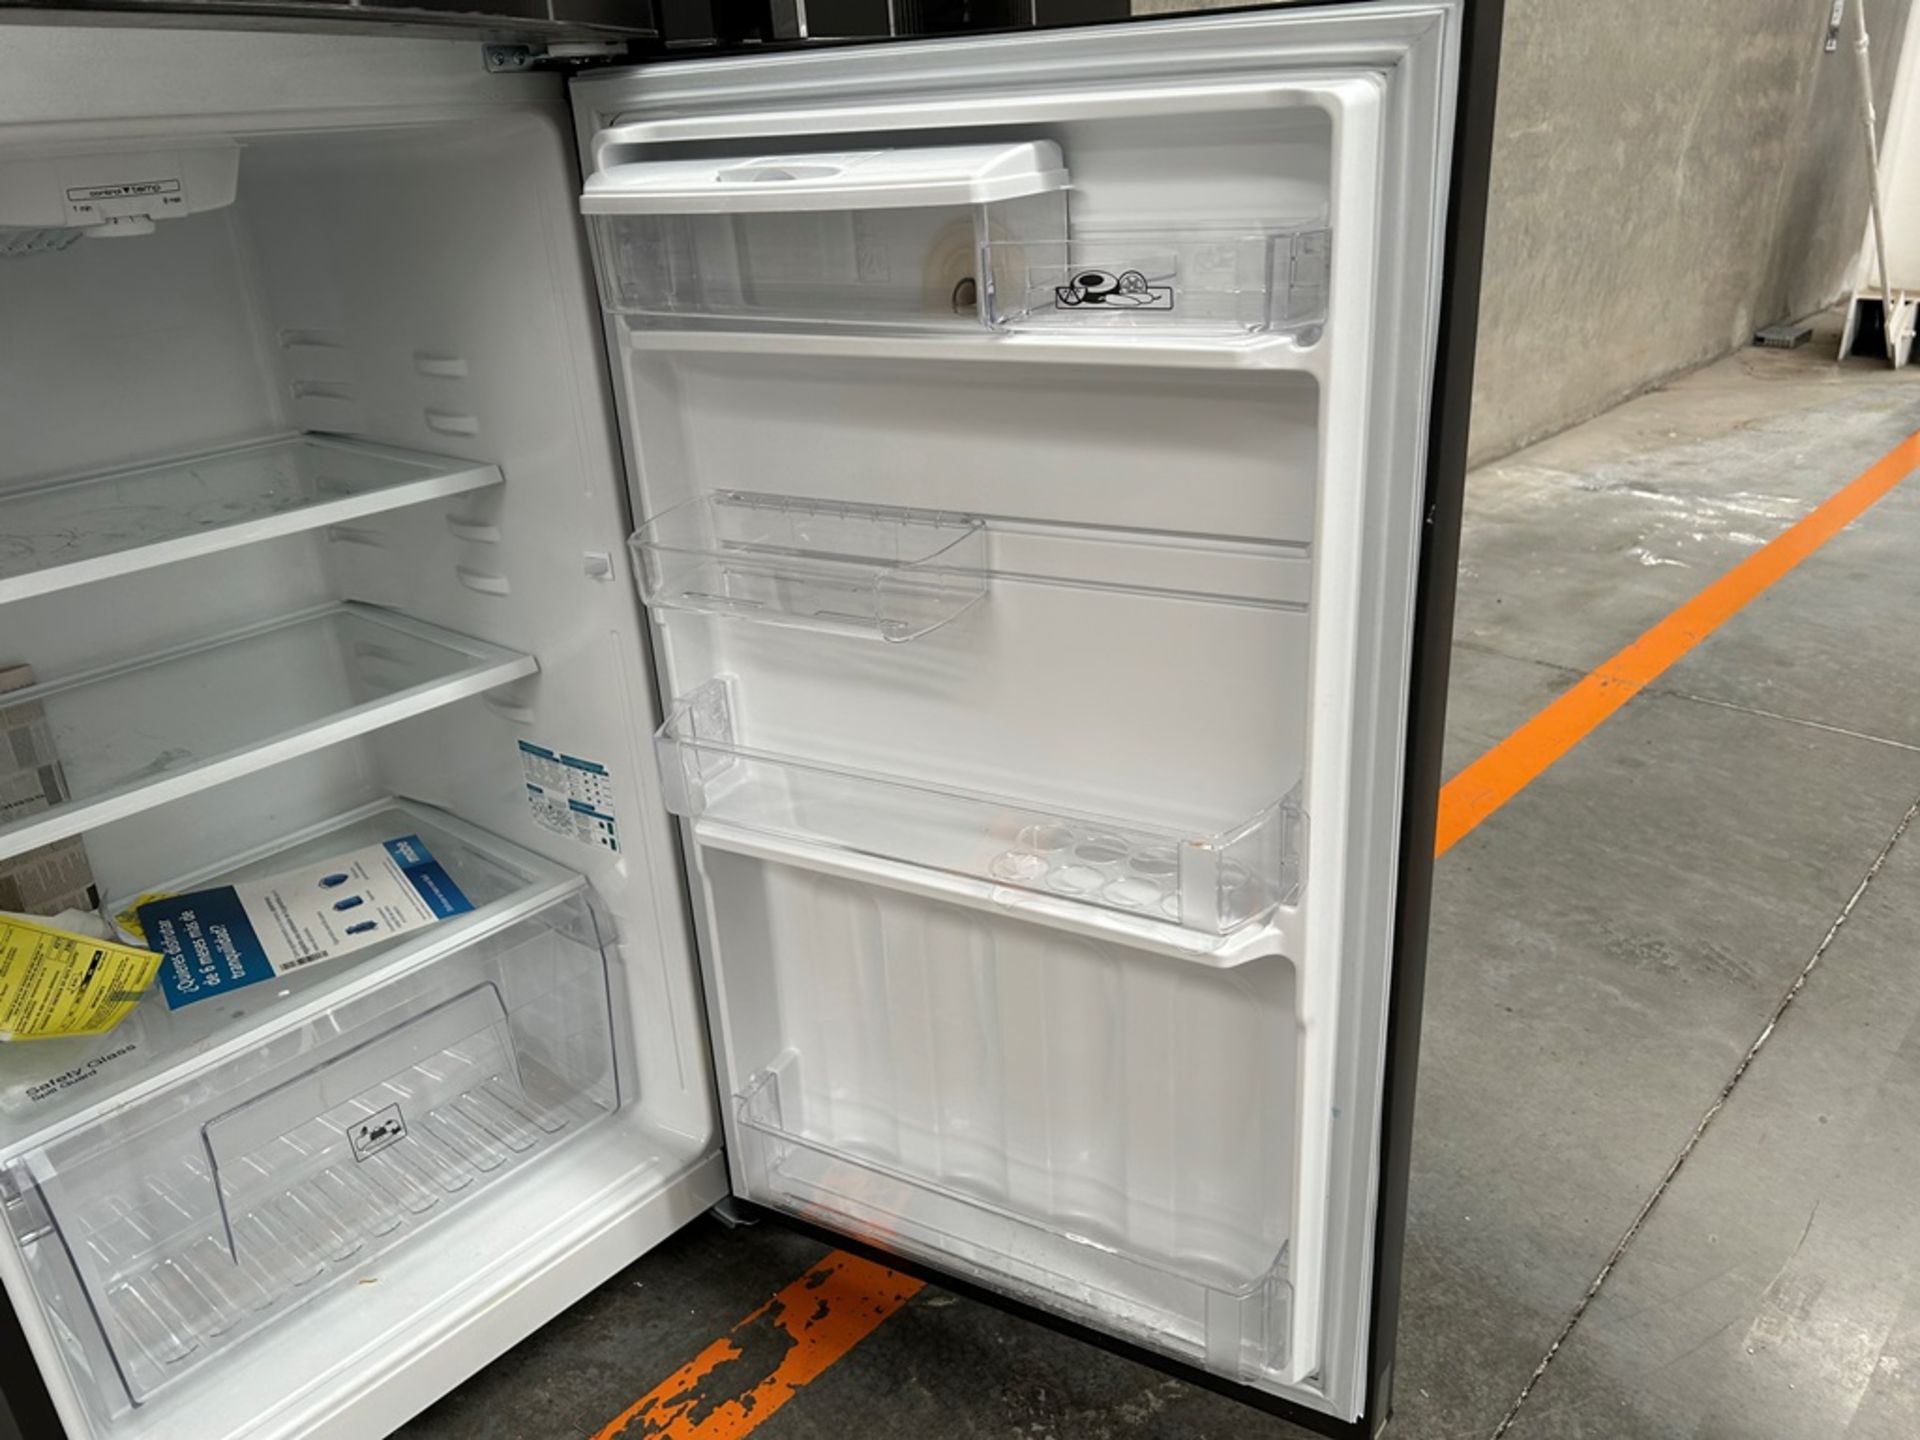 Lote de 2 refrigeradores contiene: 1 Refrigerador con dispensador de agua Marca MABE, Modelo RME360 - Image 7 of 18